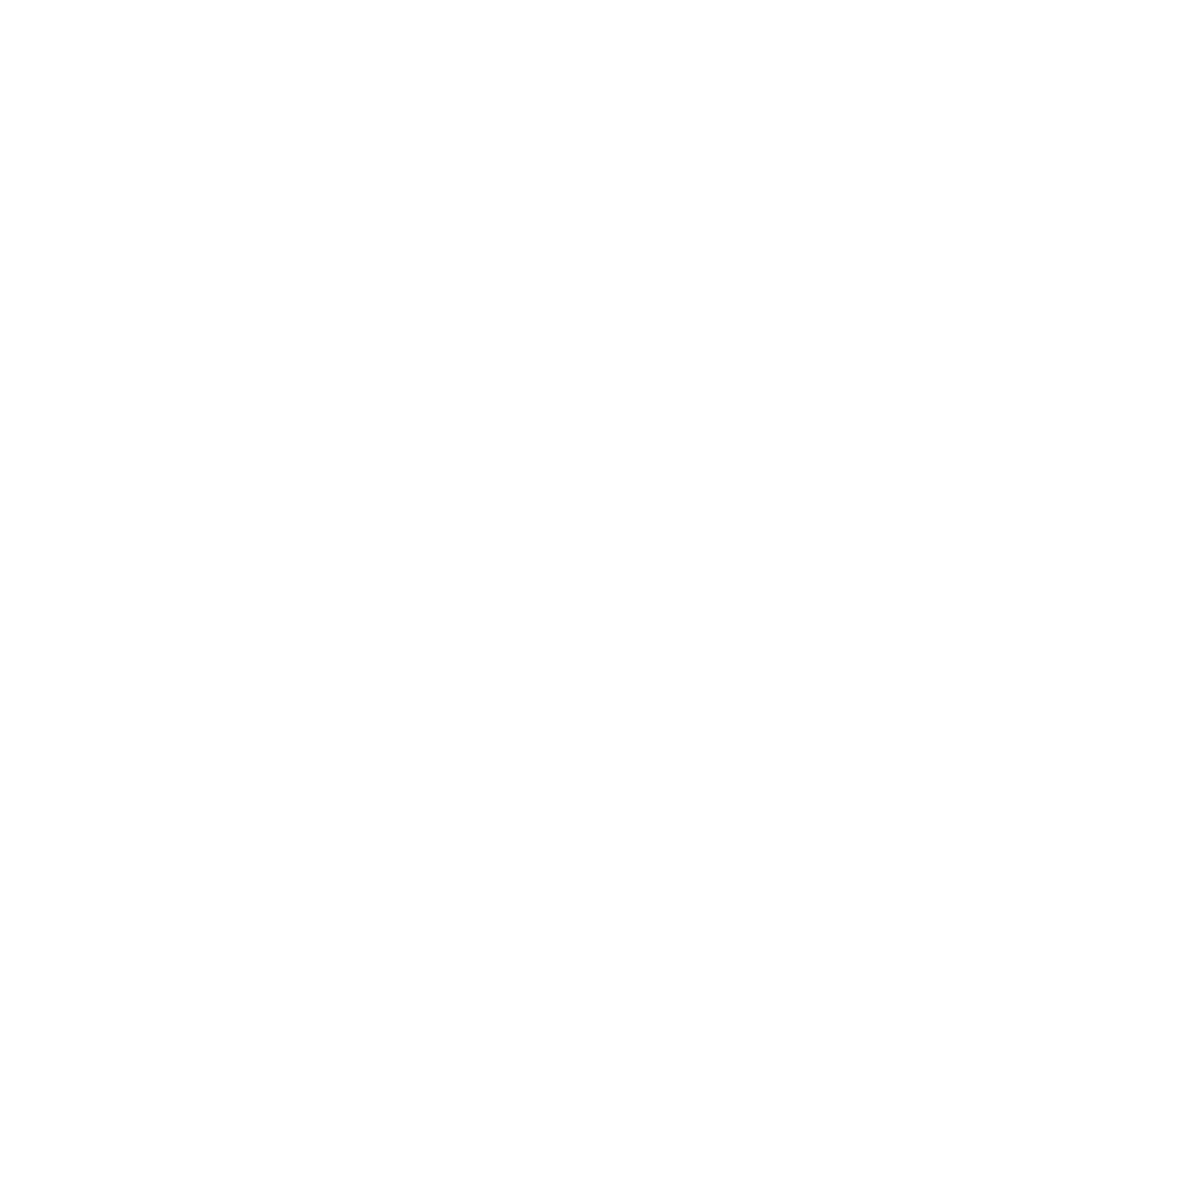 MultiLine